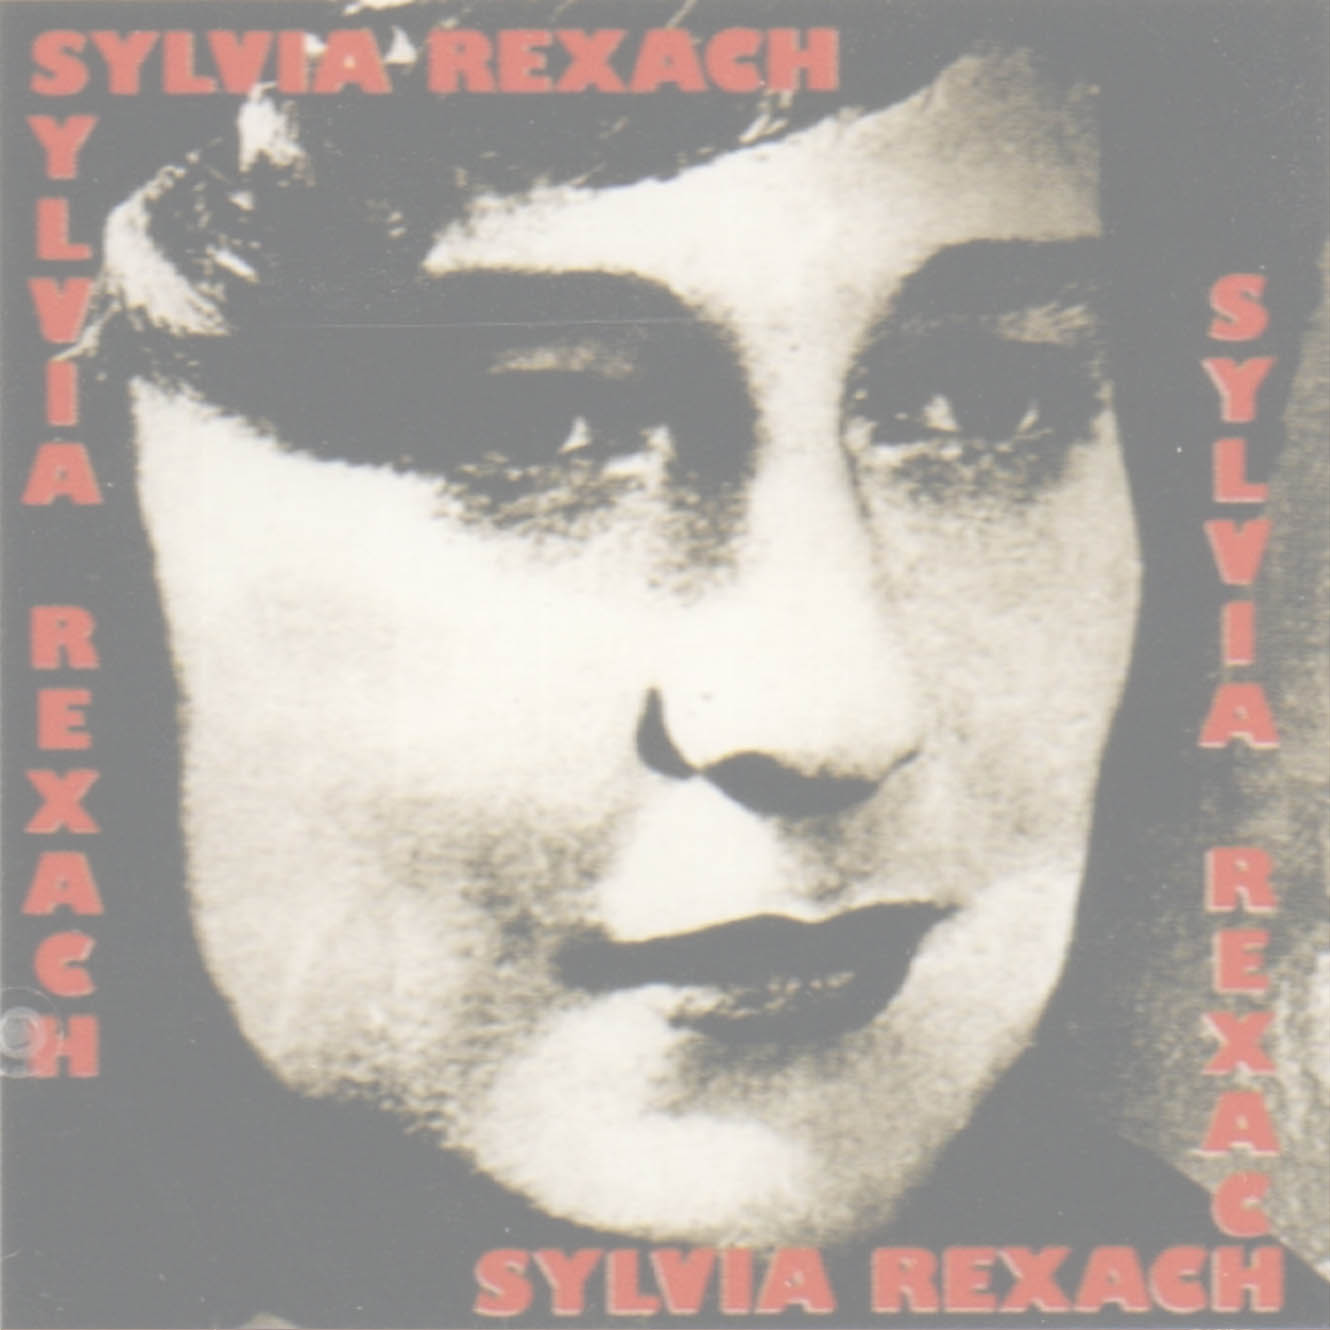 Sylvia Rexach canta a Sylvia Rexach